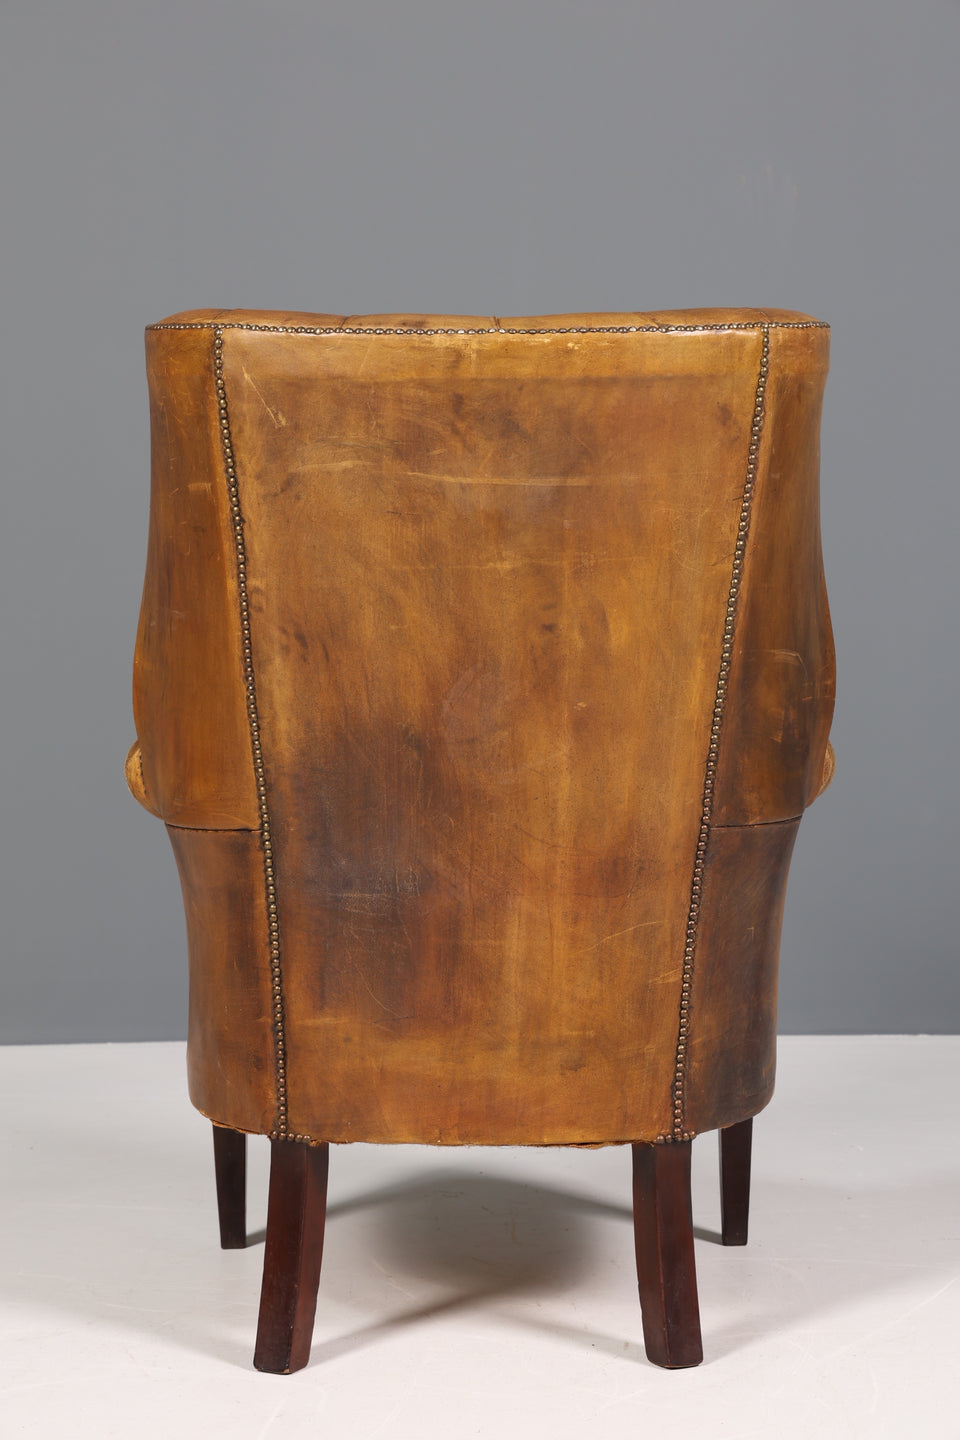 Original Chesterfield echt Leder Sessel Vintage Wing Chair Ohrenbacken Armlehnsessel Barrel Chair Antik